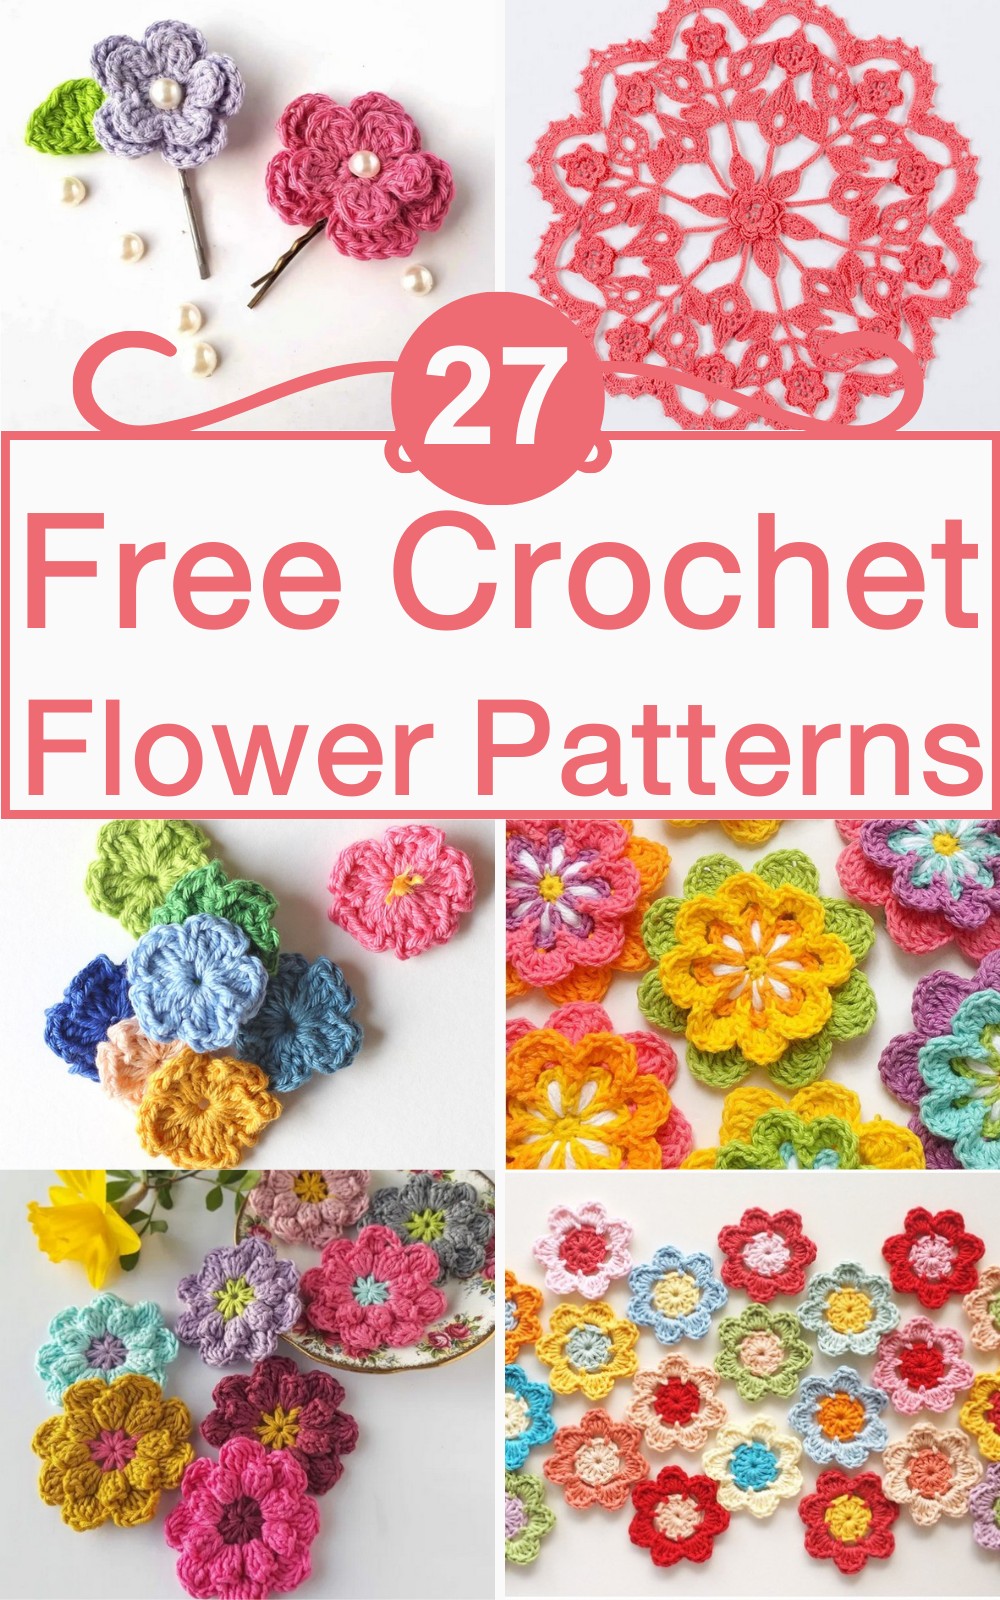 27 Free Crochet Flower Patterns